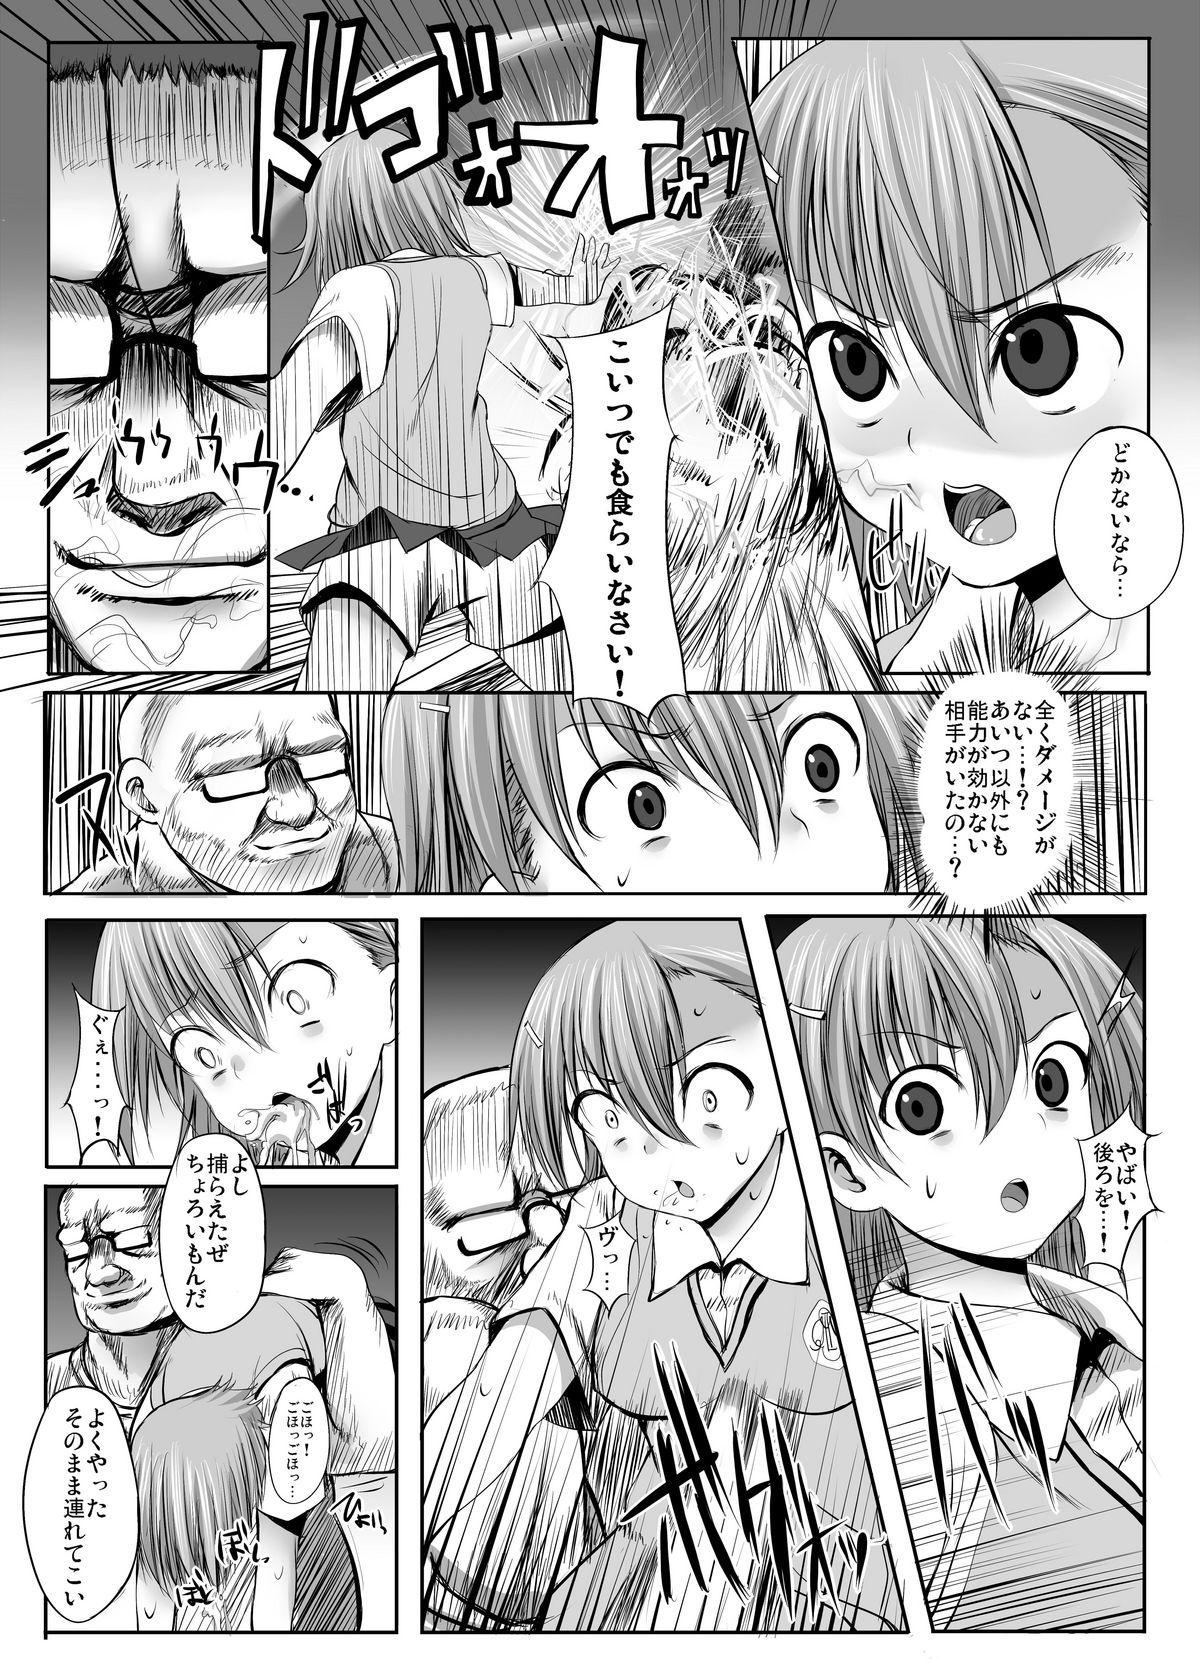 Teenie ESP・BREAKER - Toaru kagaku no railgun Toaru majutsu no index Adolescente - Page 3